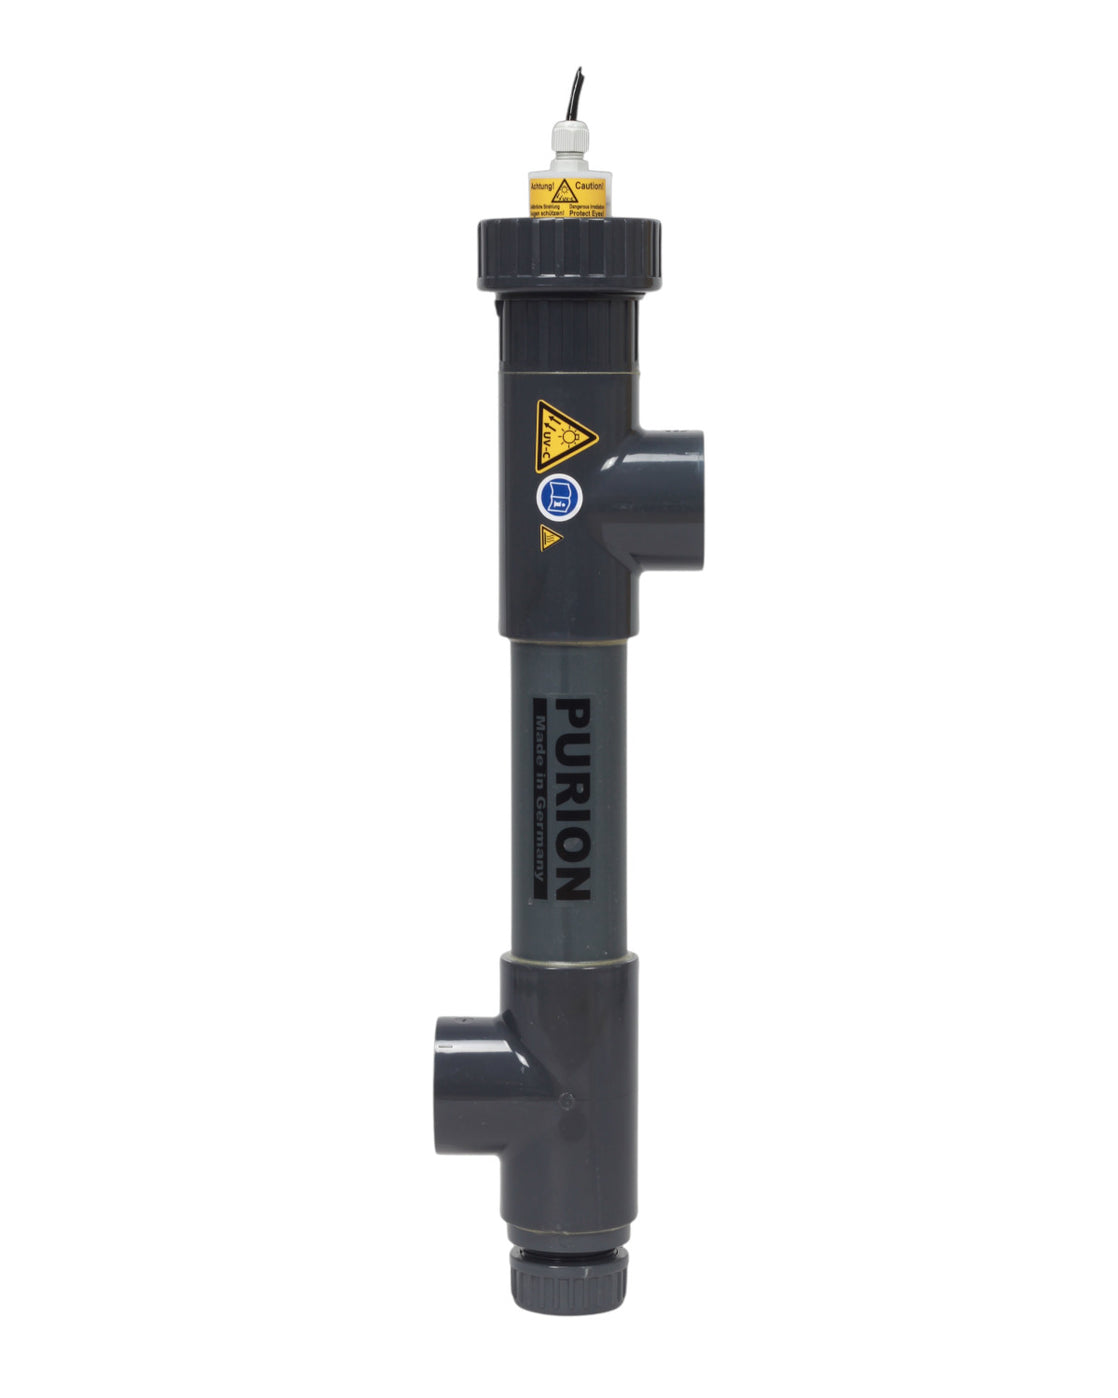 Ein schwarzes PURION 1000 PVC-U 12V/24V DC Basic-Rohr mit einem gelben Ventil darauf, entwickelt für die UV-C-Reinigung der PURION GmbH in Salzwasserpools.